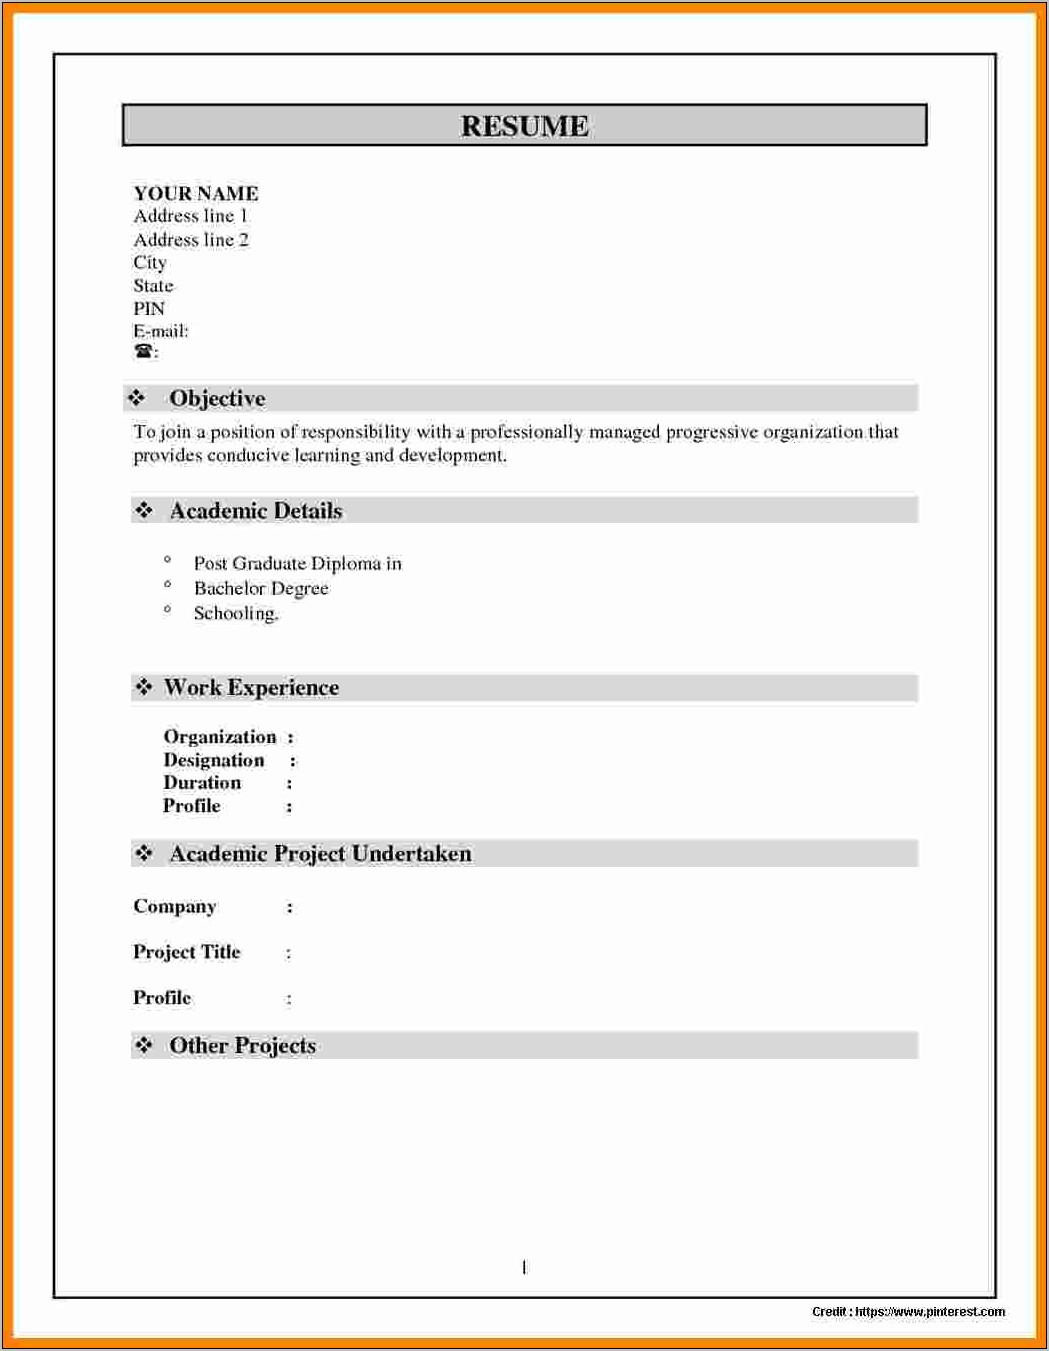 Resume Format Pdf File Free Download